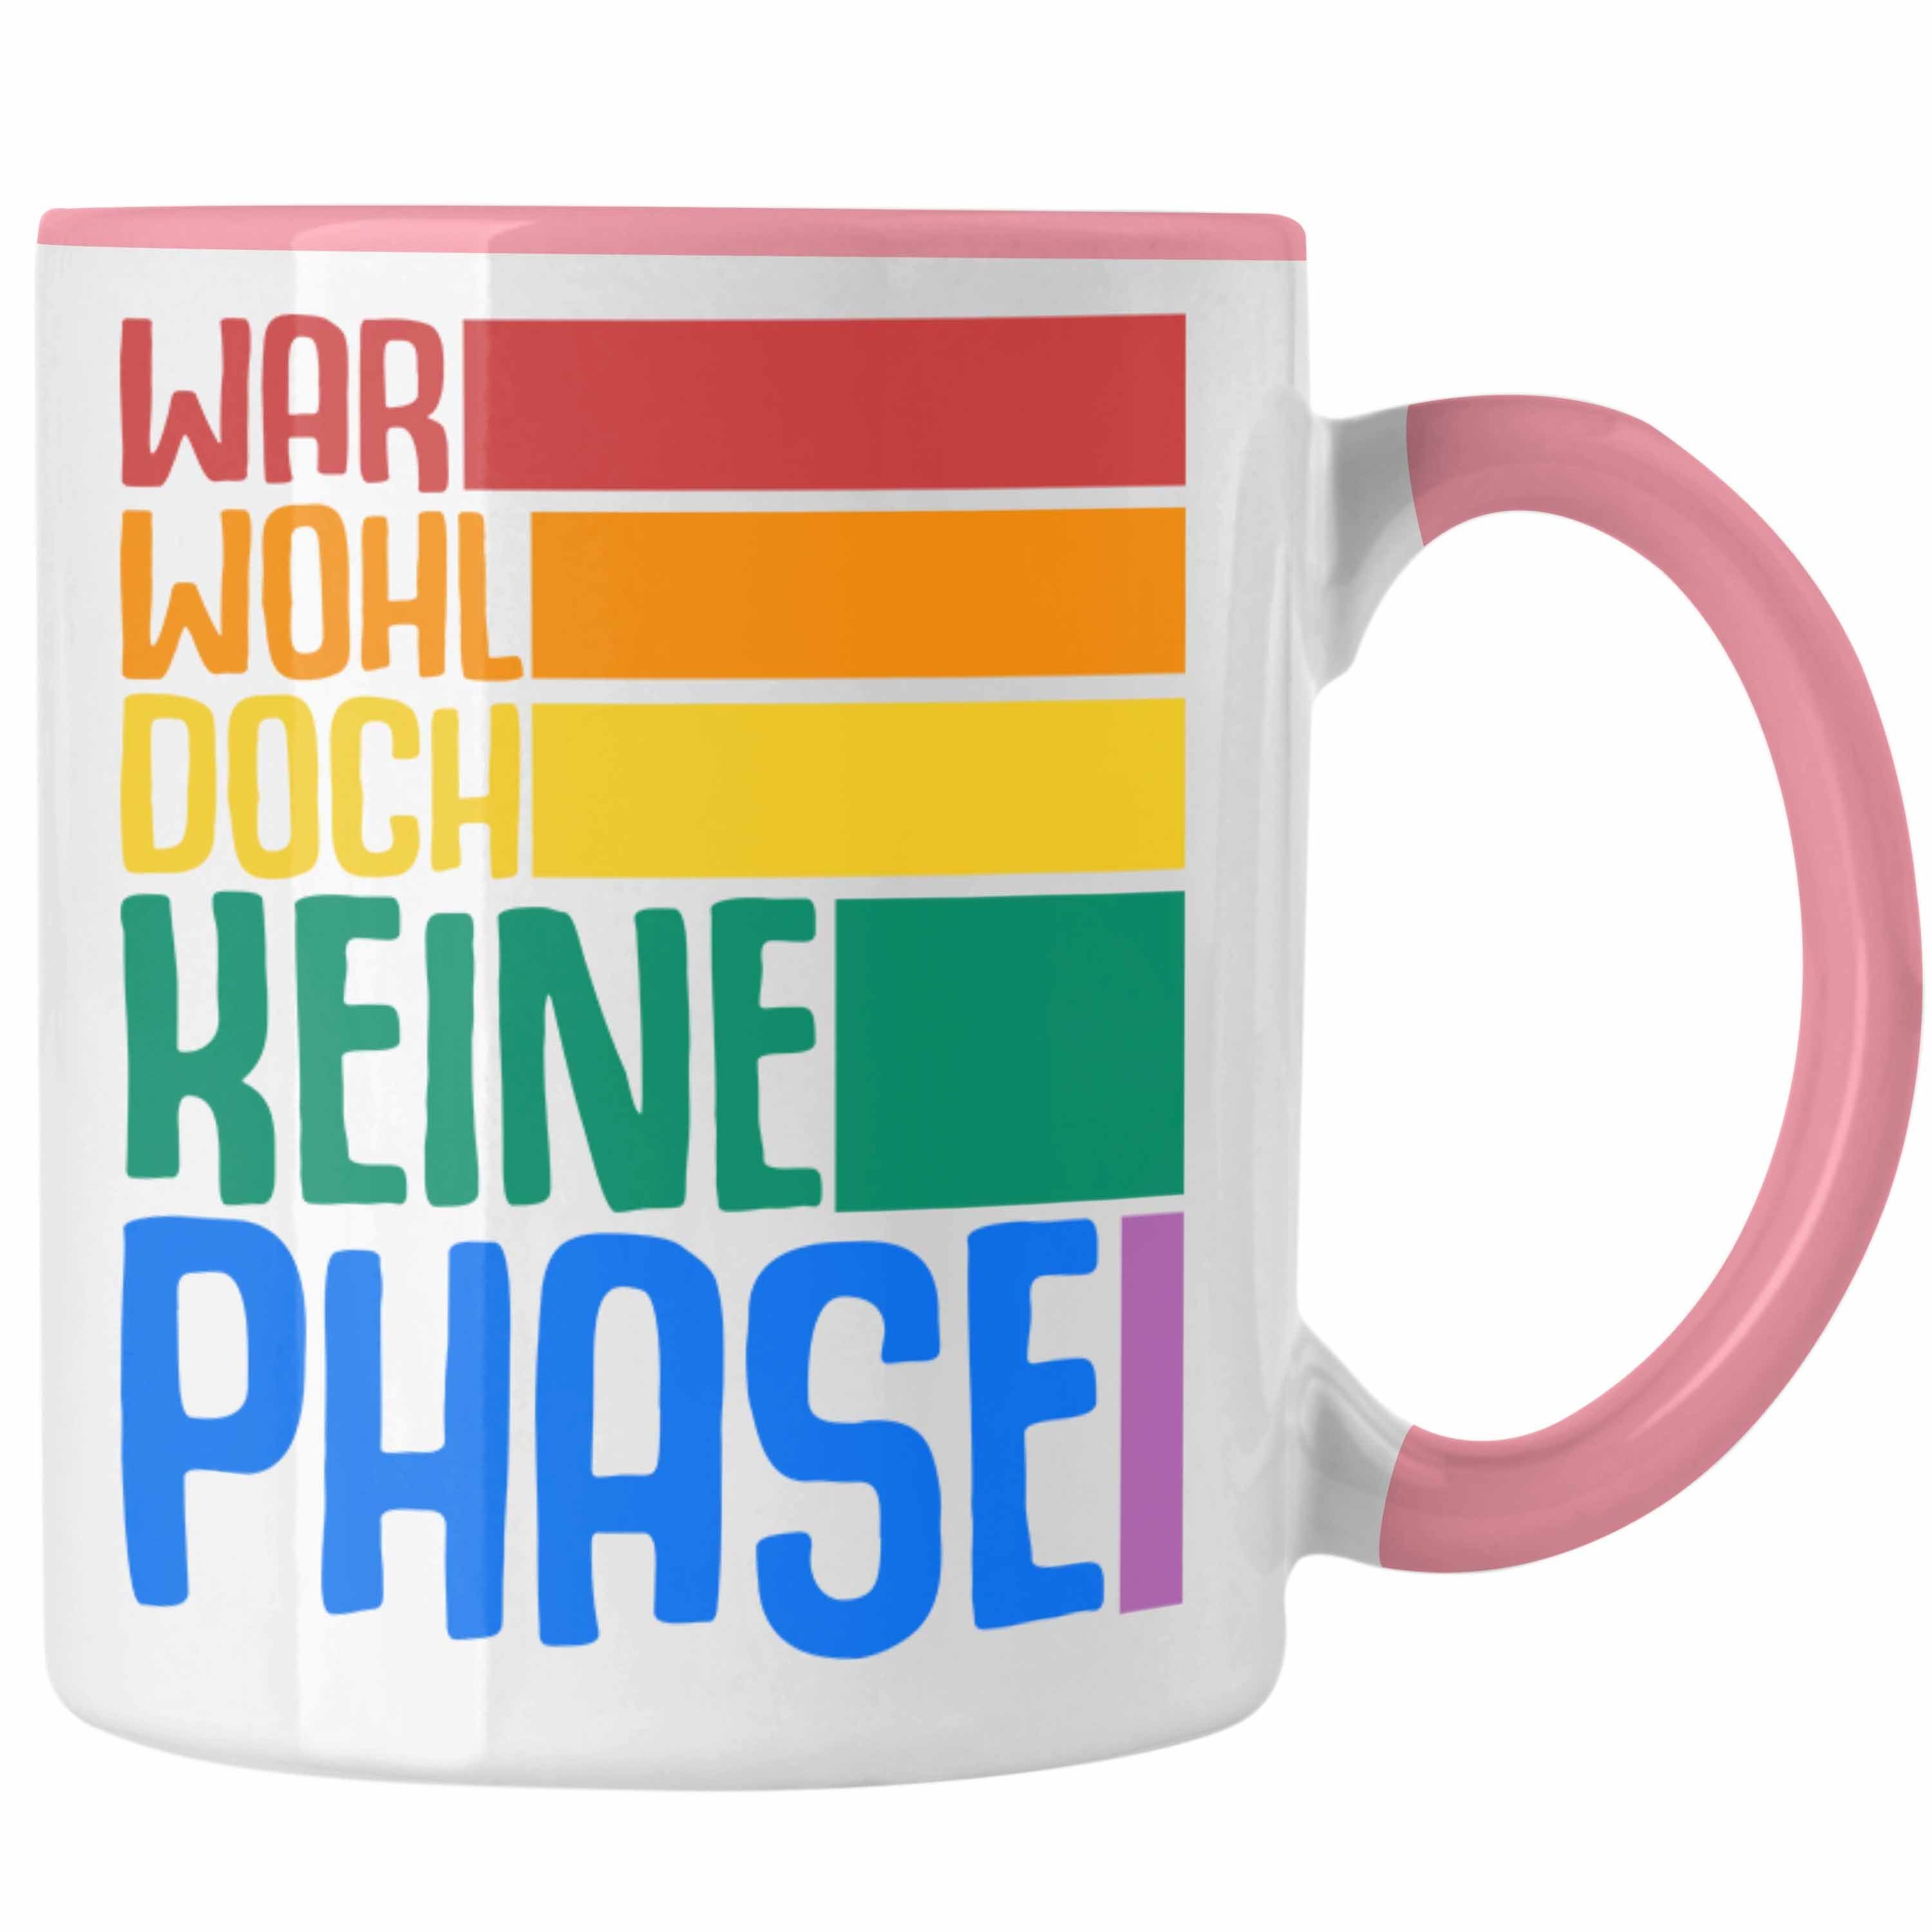 Trendation Tasse Trendation - LGBT Tasse Geschenk für Schwule Lesben Transgender Regenbogen Lustige Grafik Regenbogen War Wohl Doch Keine Phase Rosa